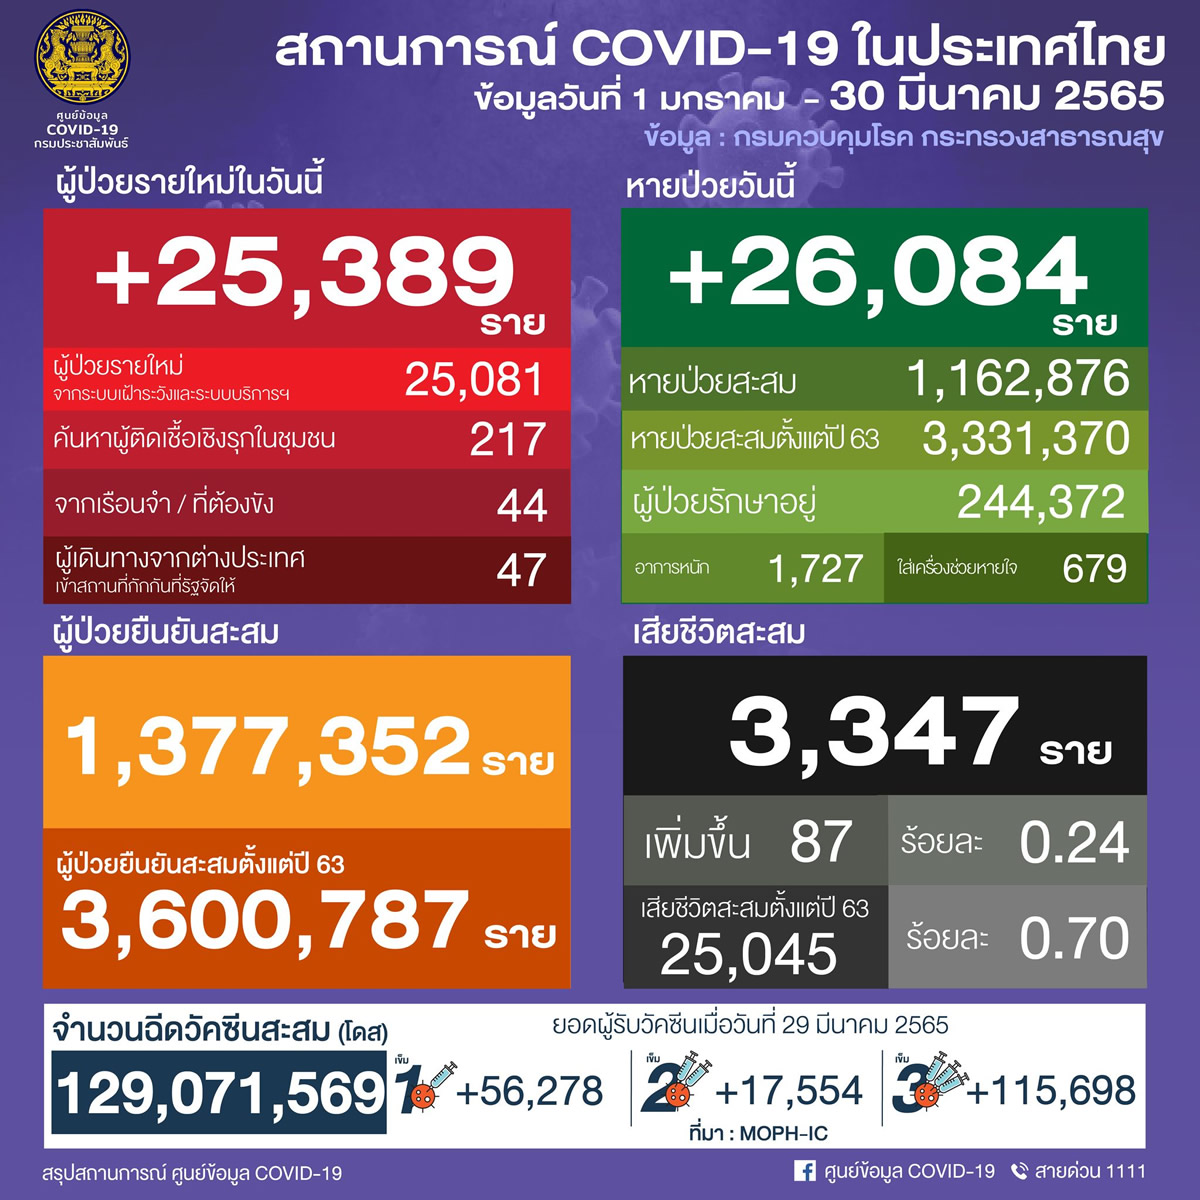 タイ 25,389人陽性 87人死亡／バンコク 3,325人陽性／チョンブリ 1,283人陽性／ナコンシータマラート 889人陽性［2022年3月30日発表］